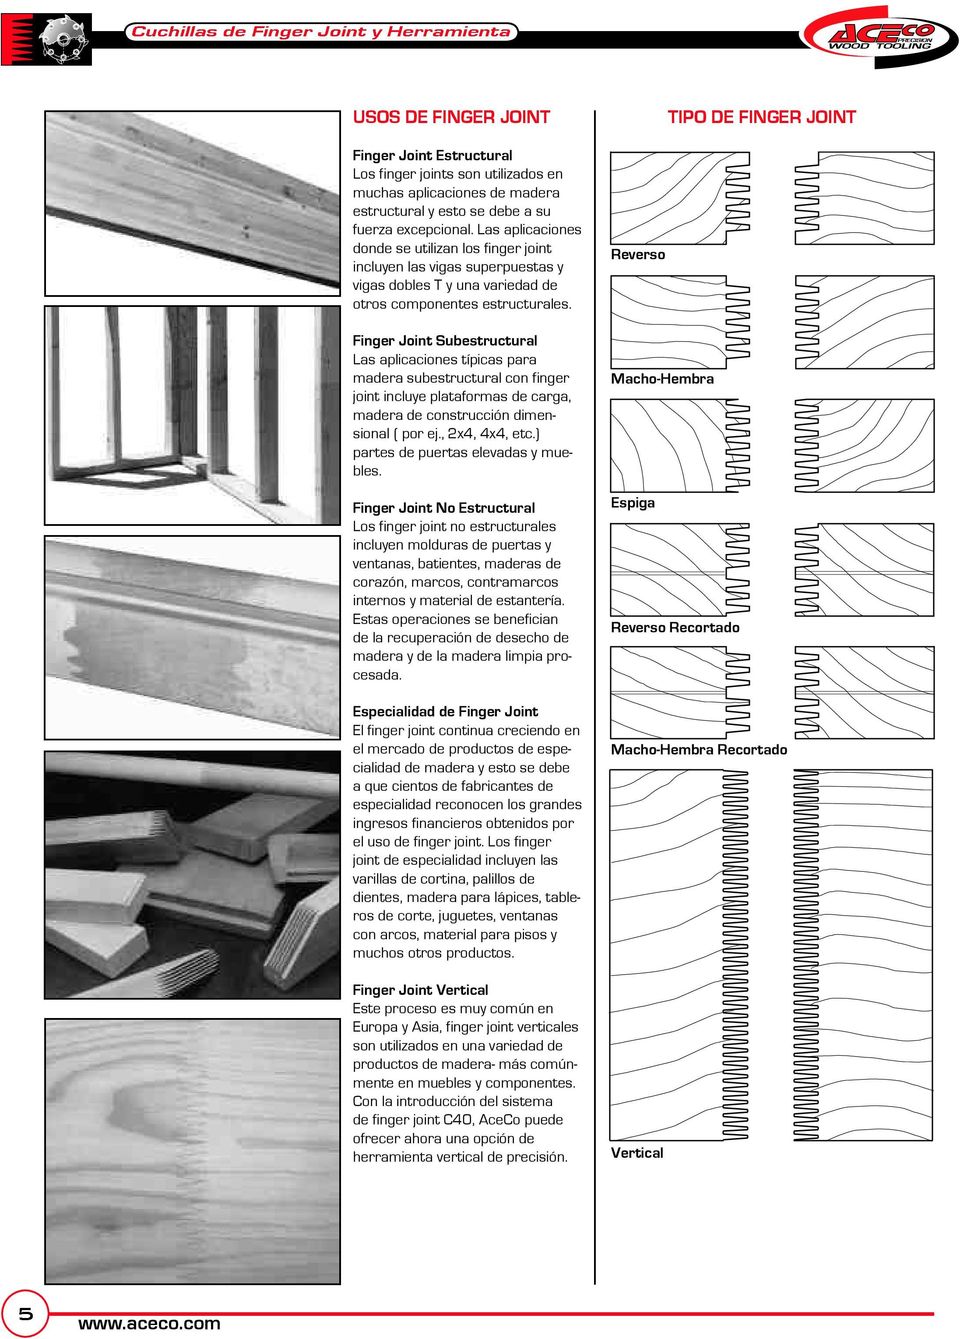 Finger Joint Subestructural Las aplicaciones típicas para madera subestructural con finger joint incluye plataformas de carga, madera de construcción dimensional ( por ej., 2x4, 4x4, etc.